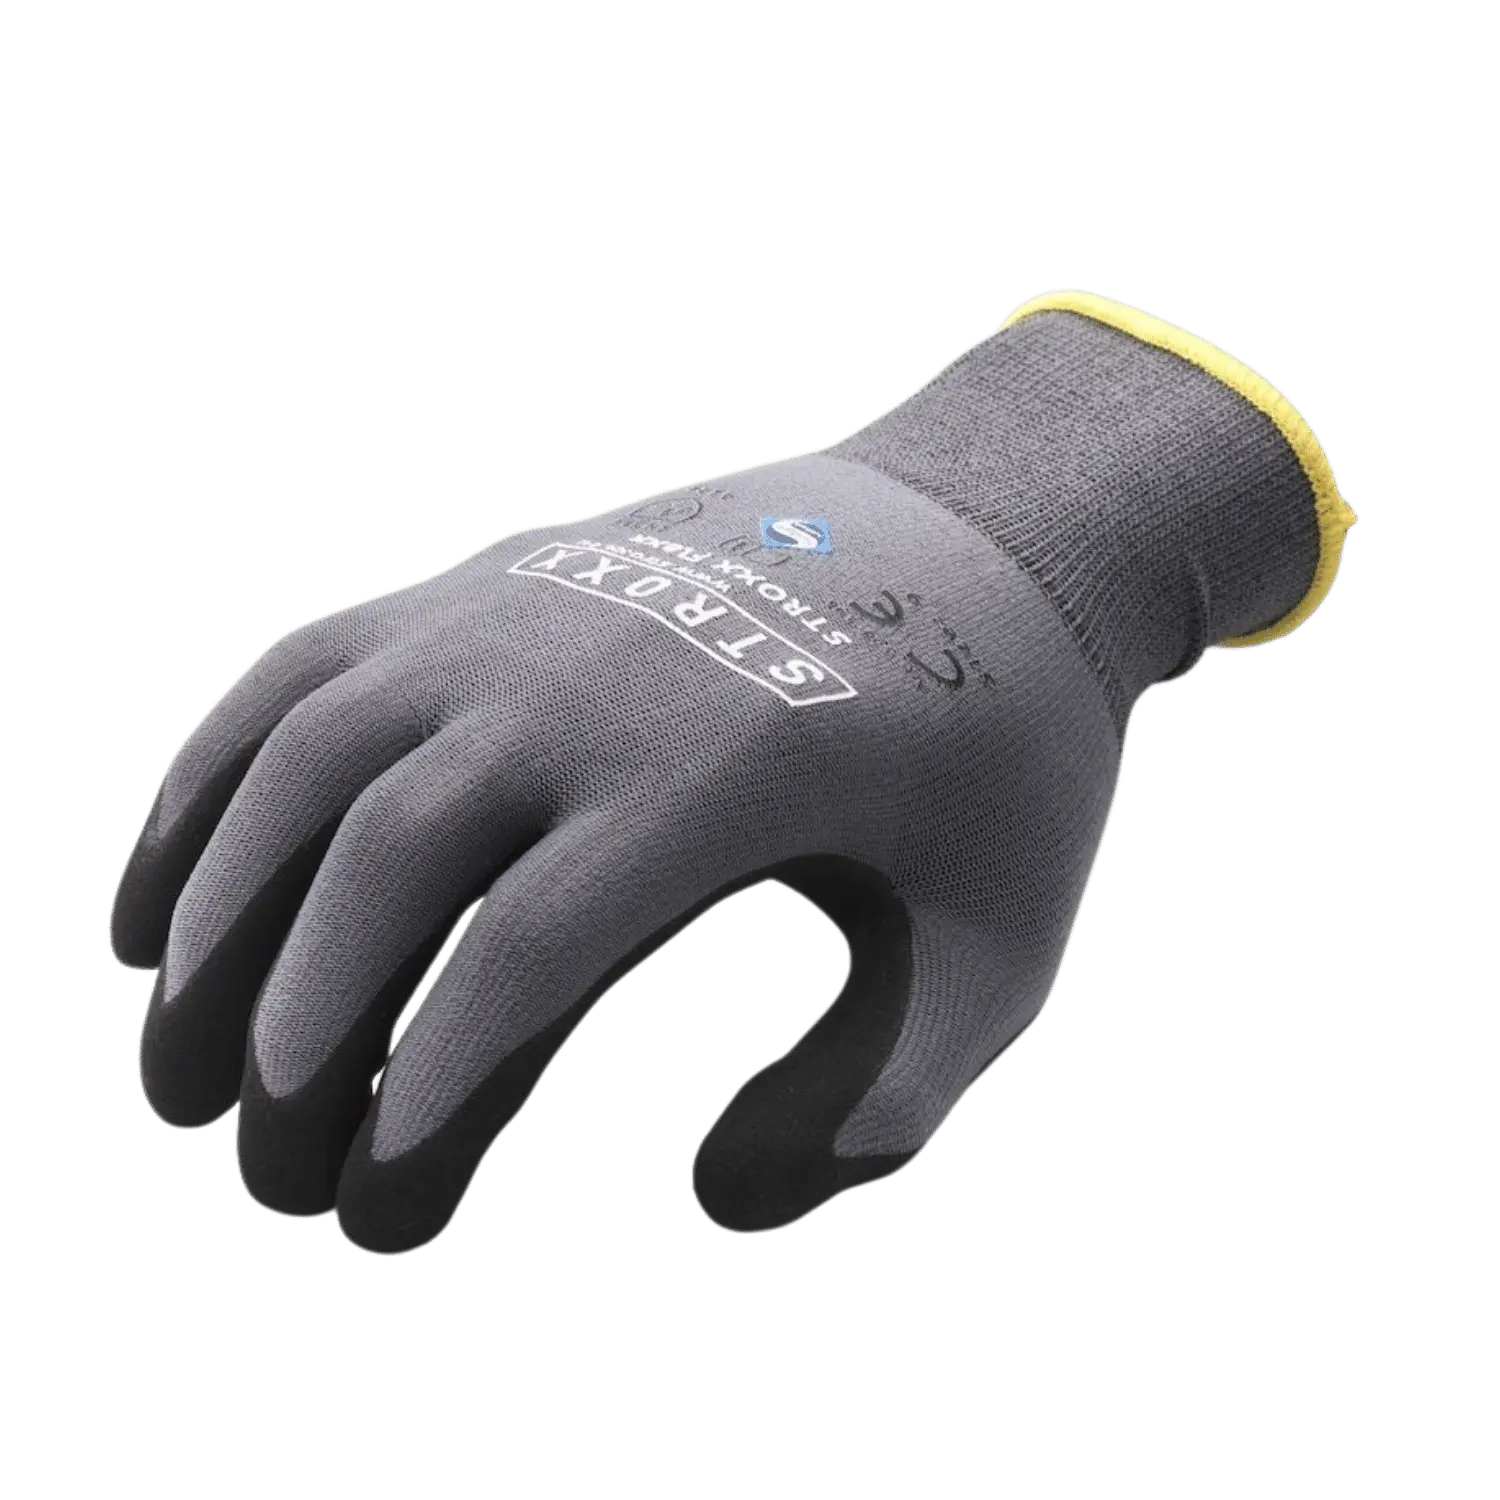 Flexx dunne naadloze handschoen 4131 - met nitril coating